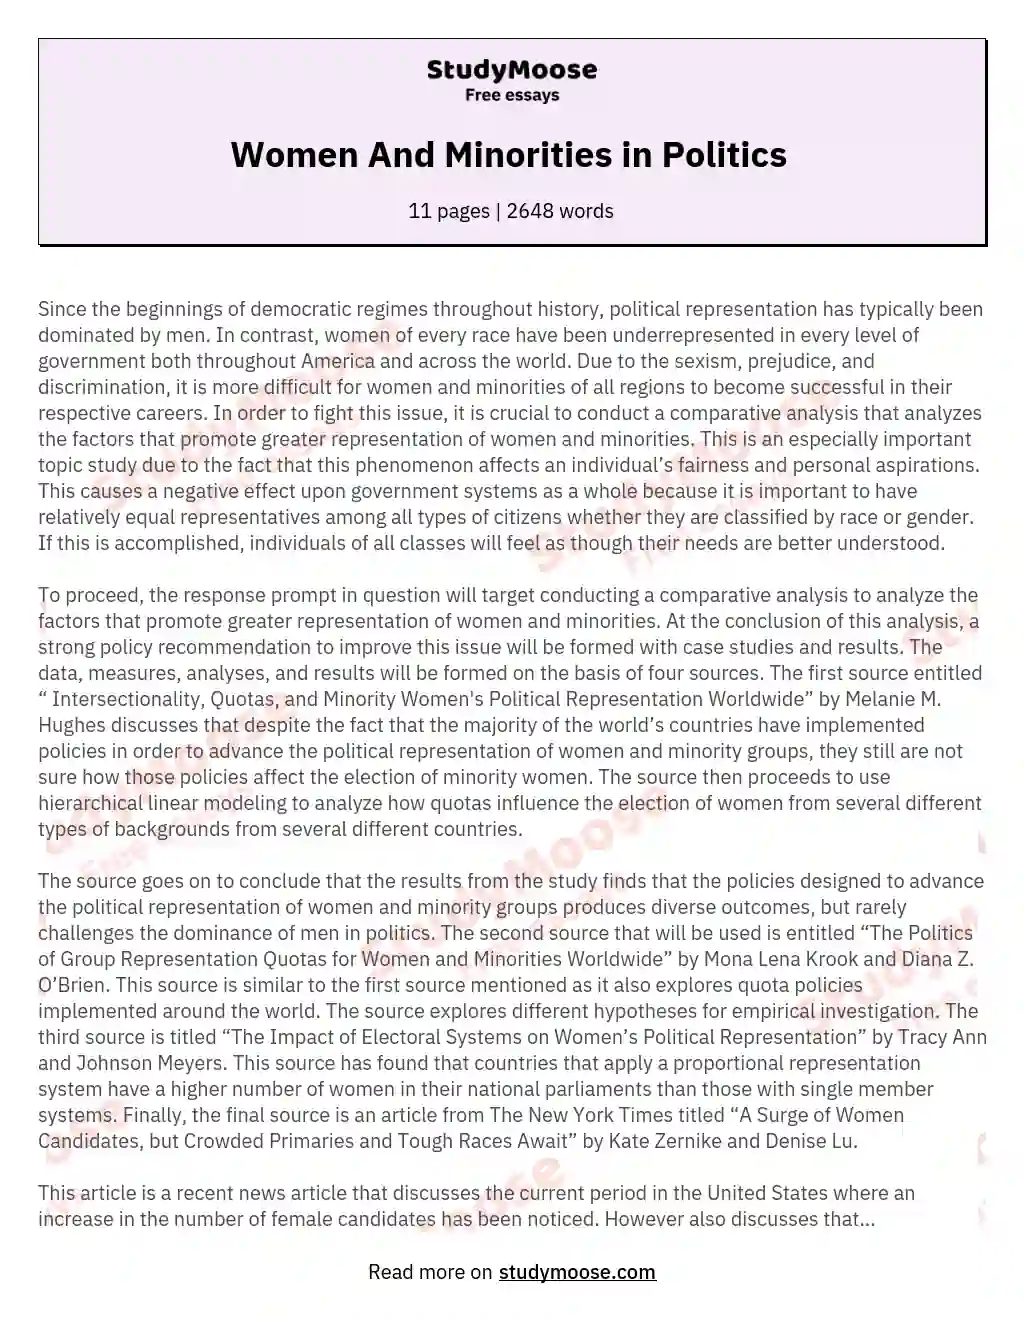 Women And Minorities in Politics  essay